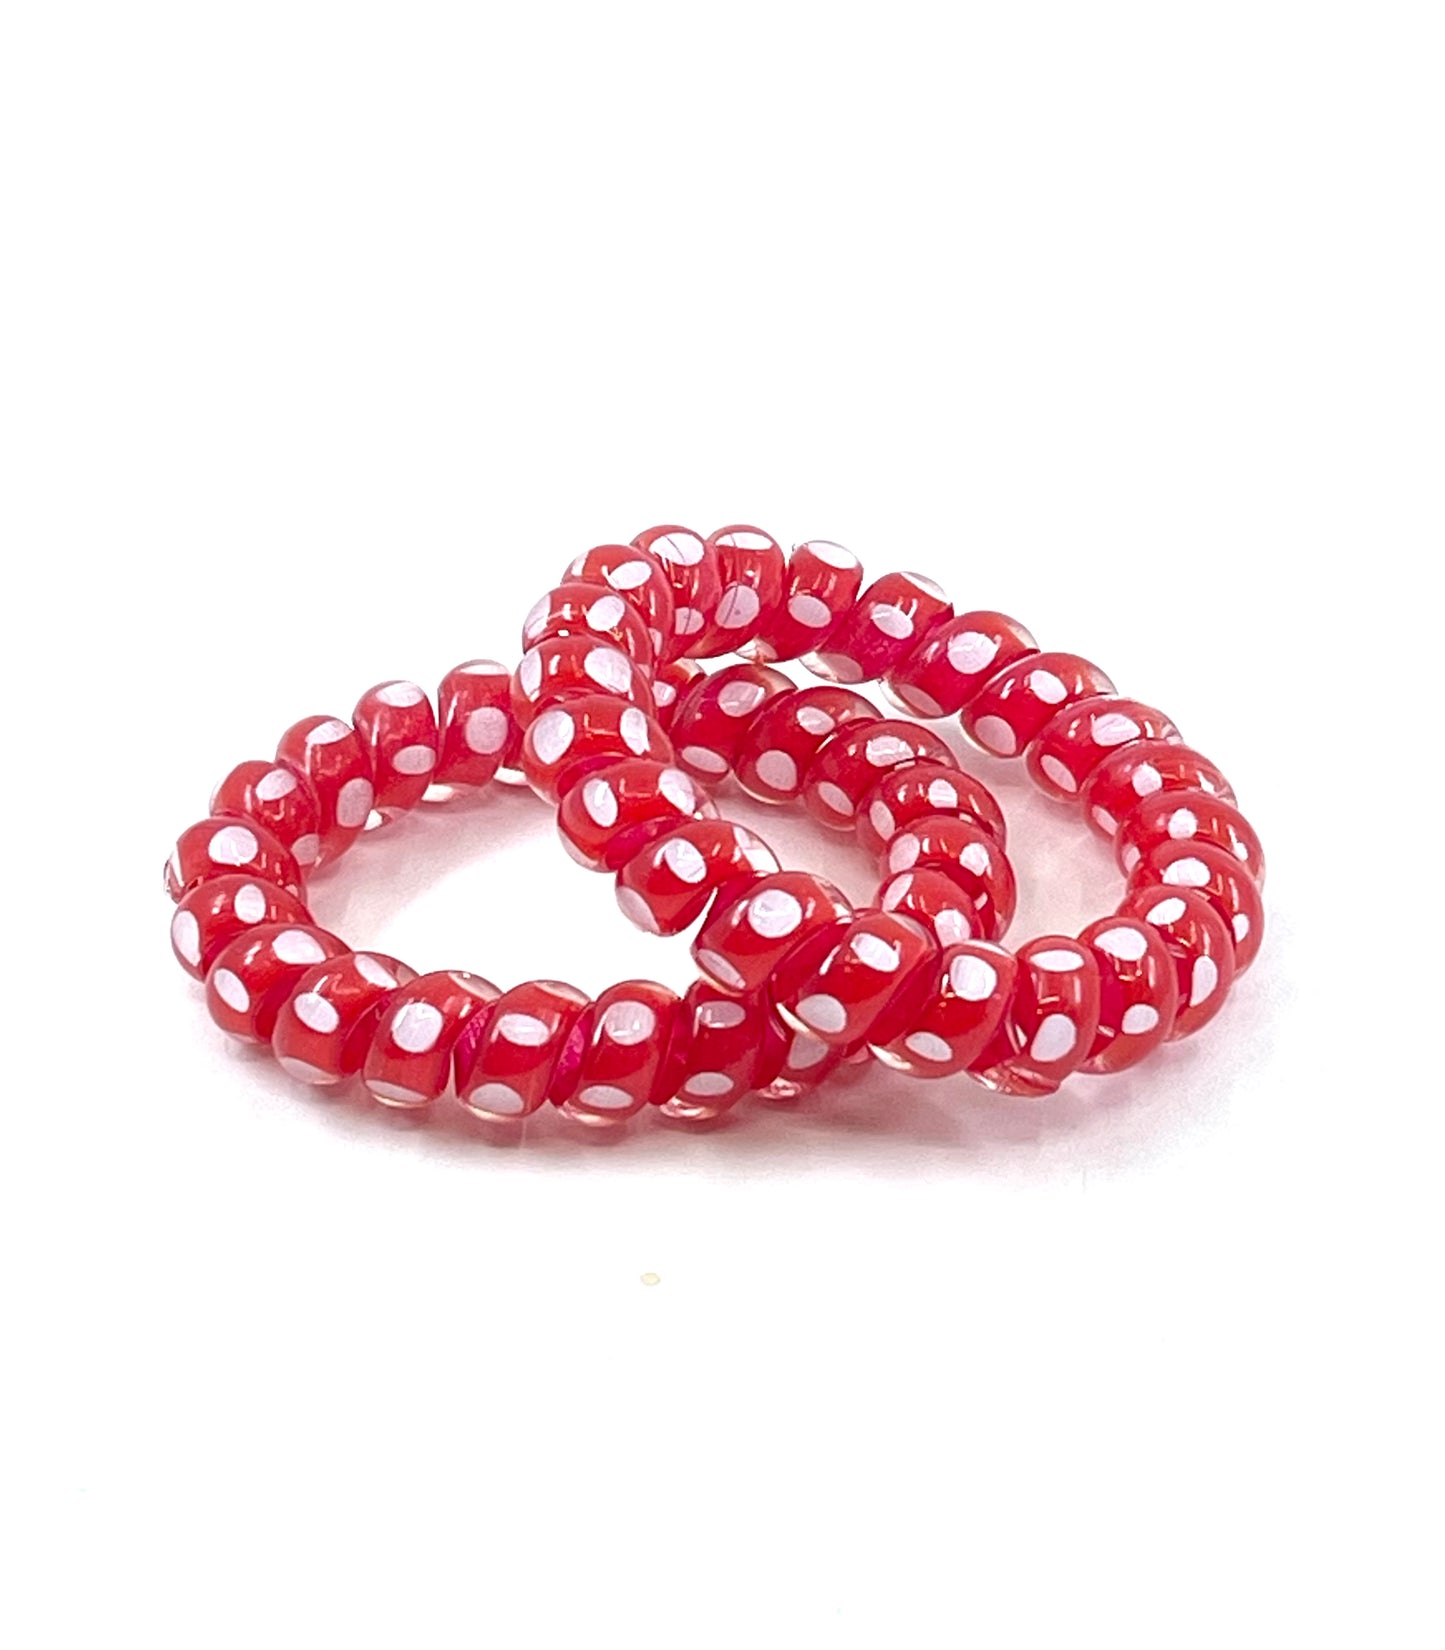 Large Spiral Hair Ties - Red polka